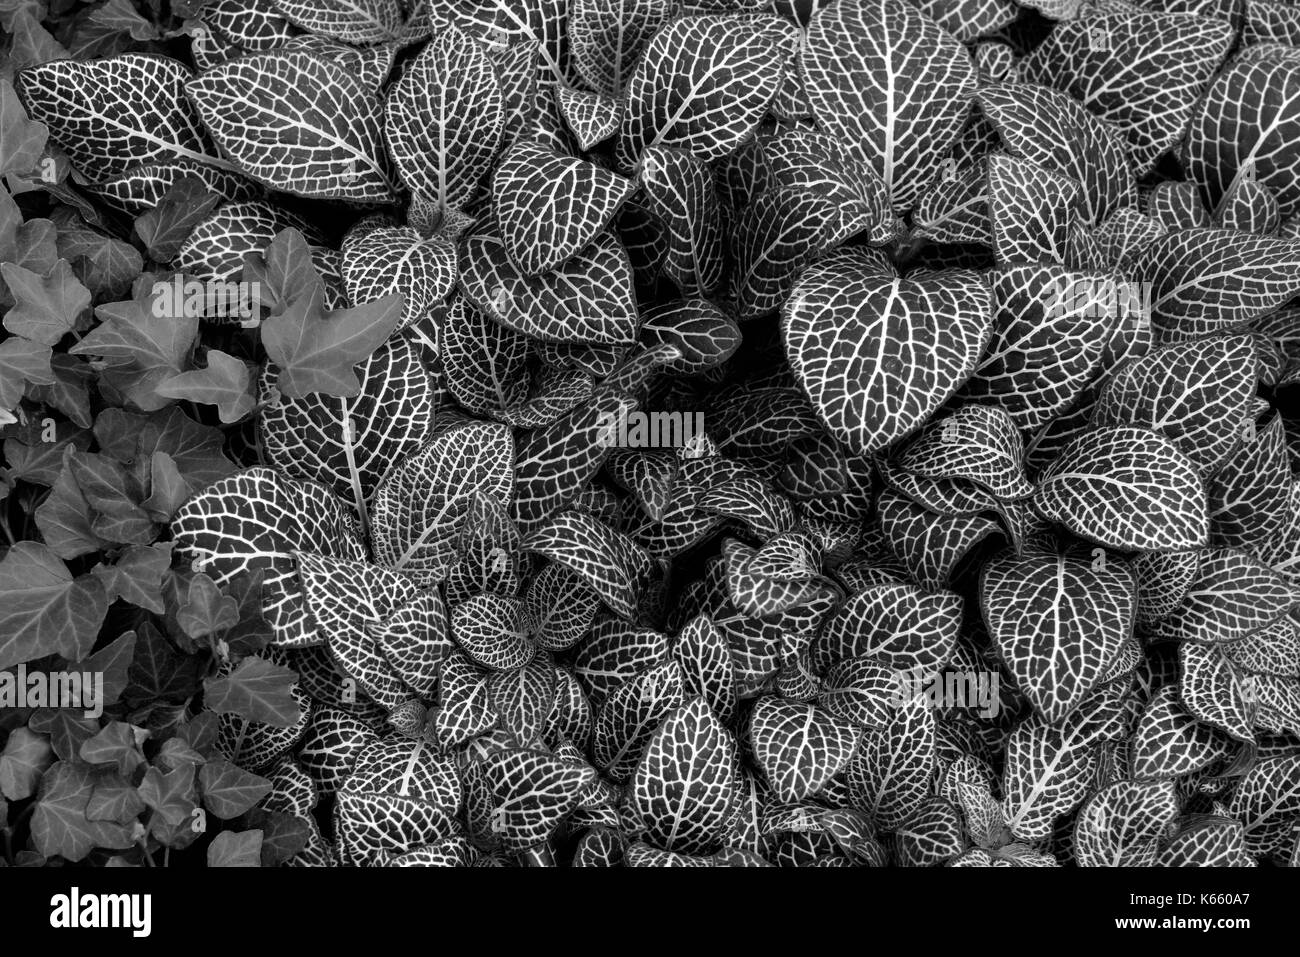 Impianto del nervo dipinto net foglia sullo sfondo della natura. in bianco e nero. Foto Stock